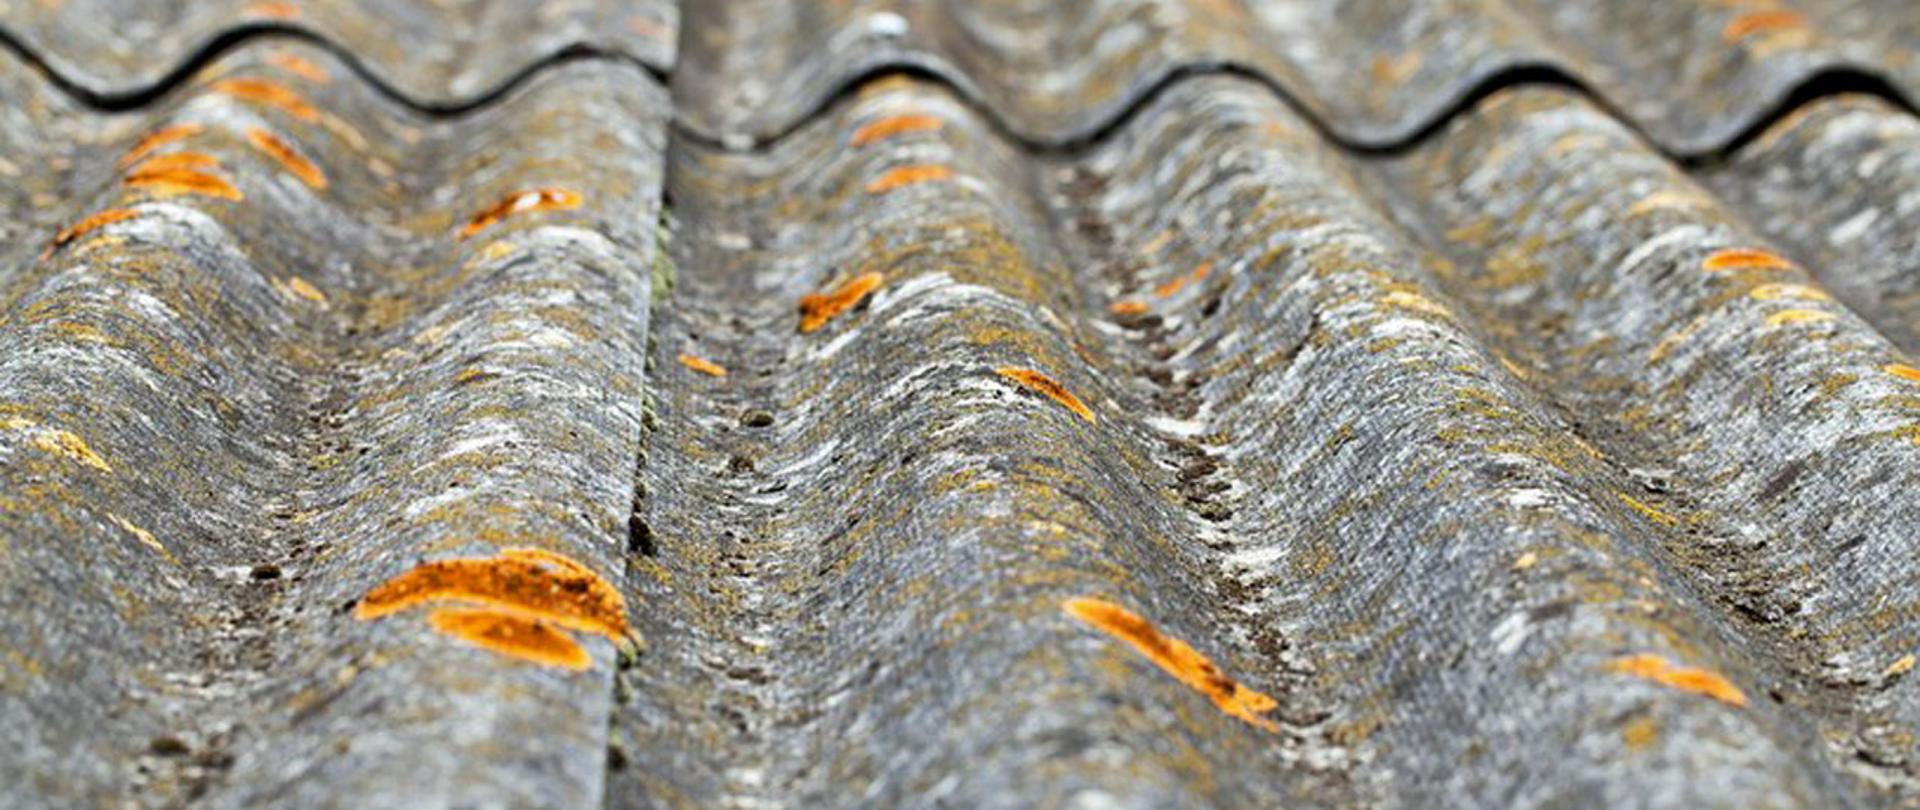 na fotografii ukazano pokrycie dachowe zawierające azbest